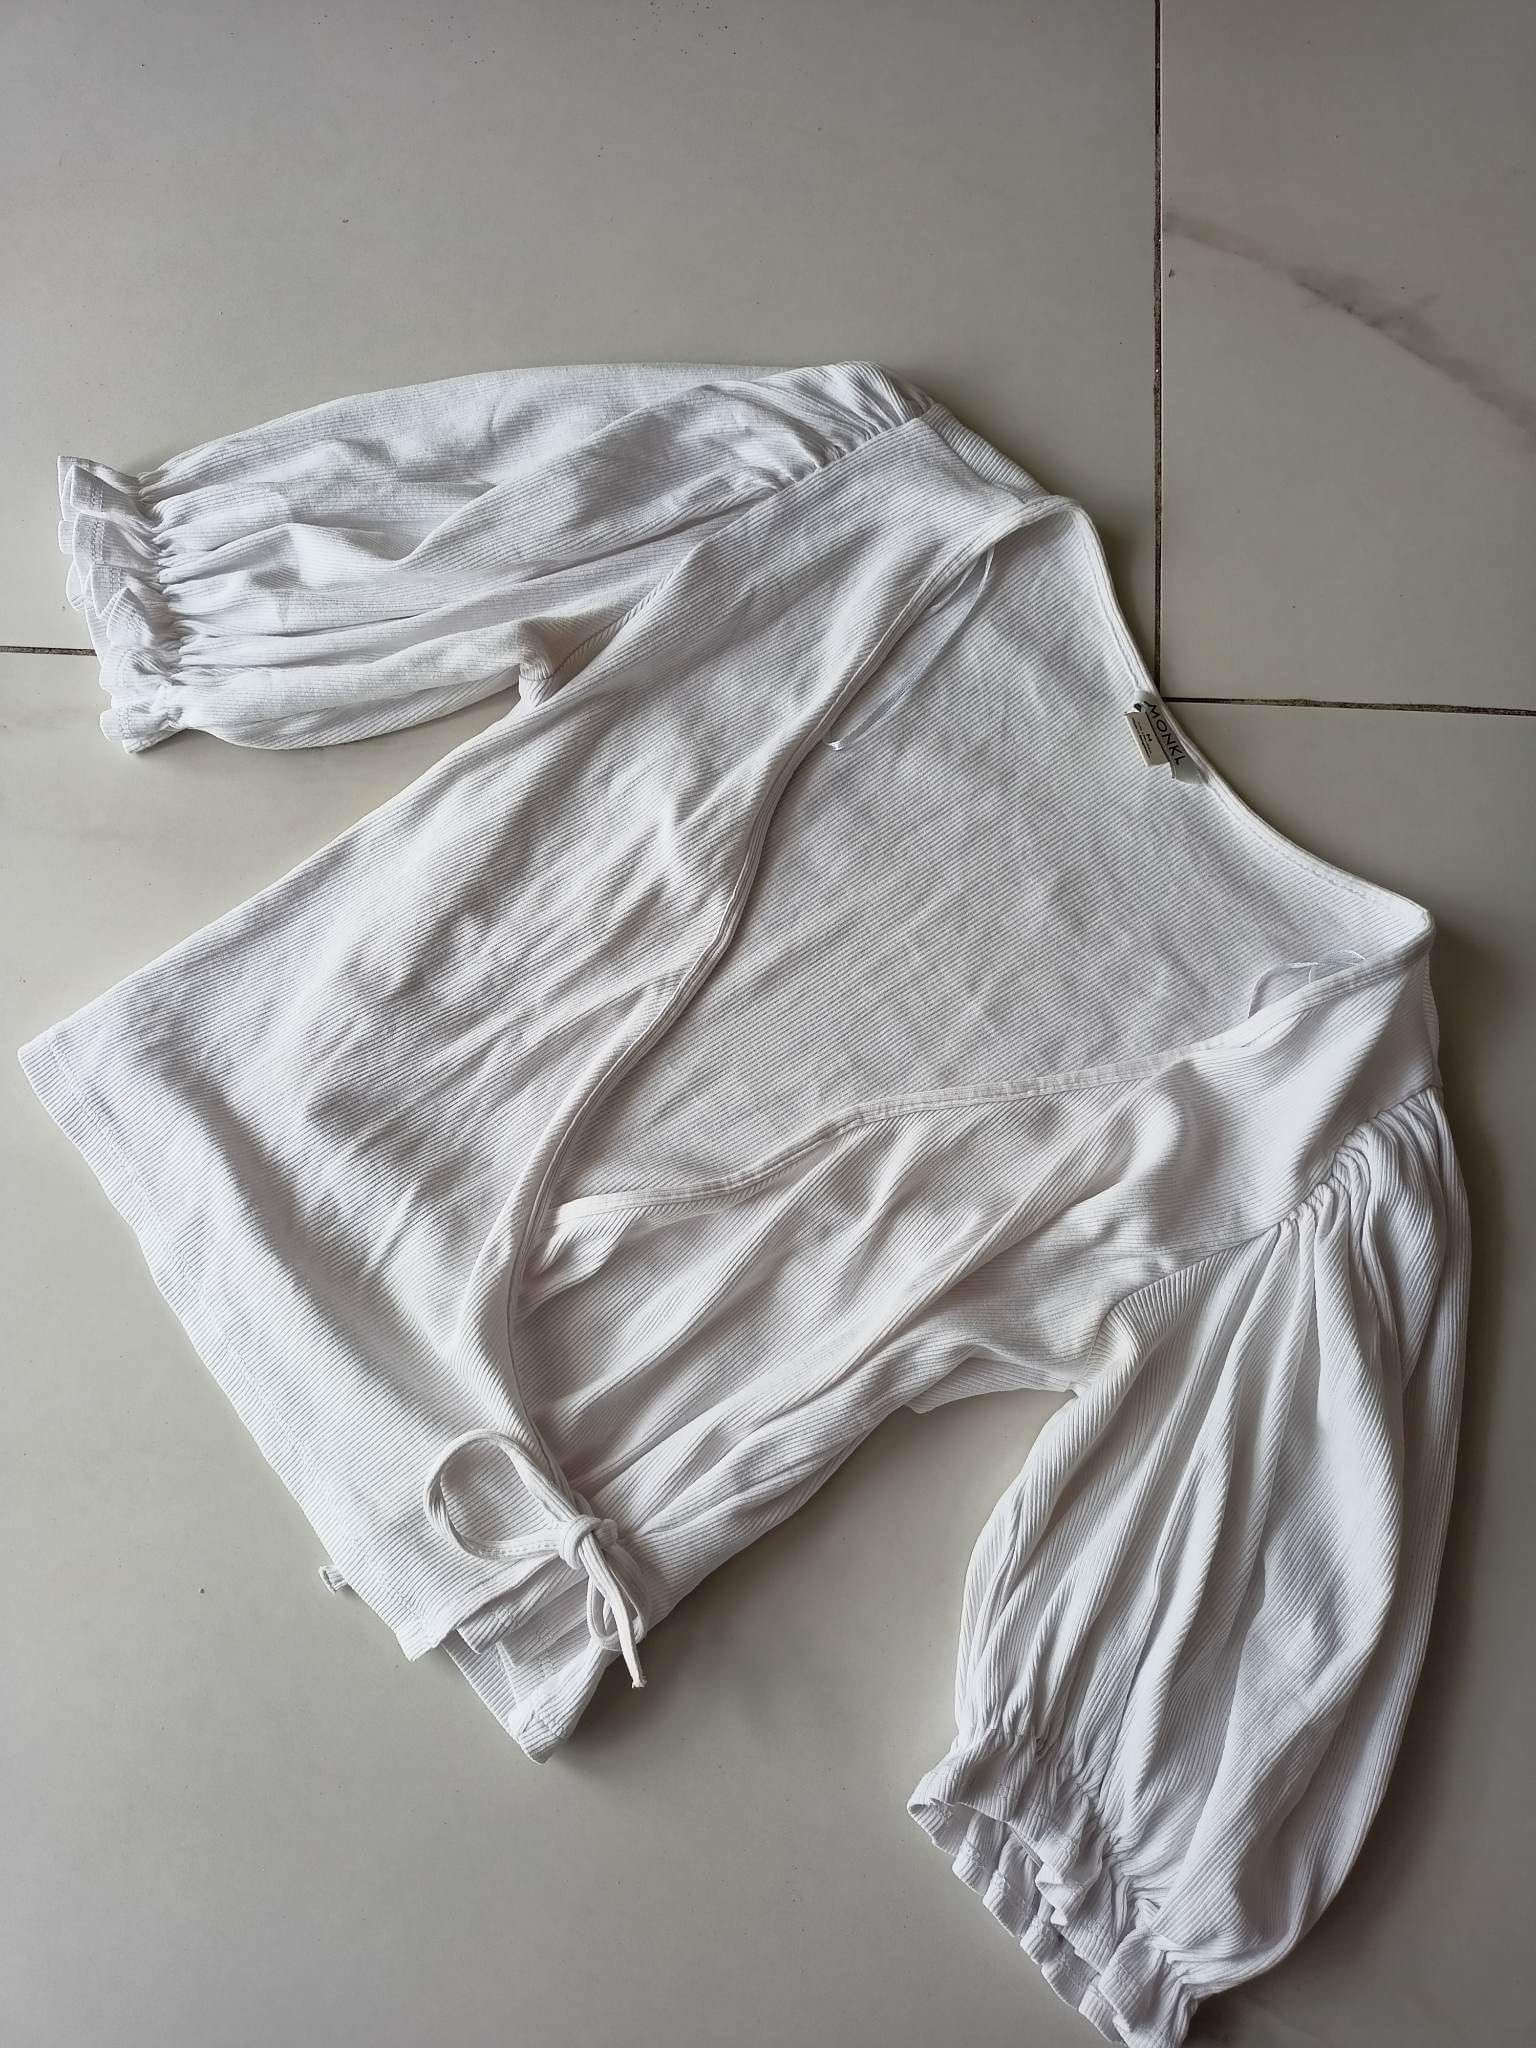 bawelniana biala bluzka z bufkami